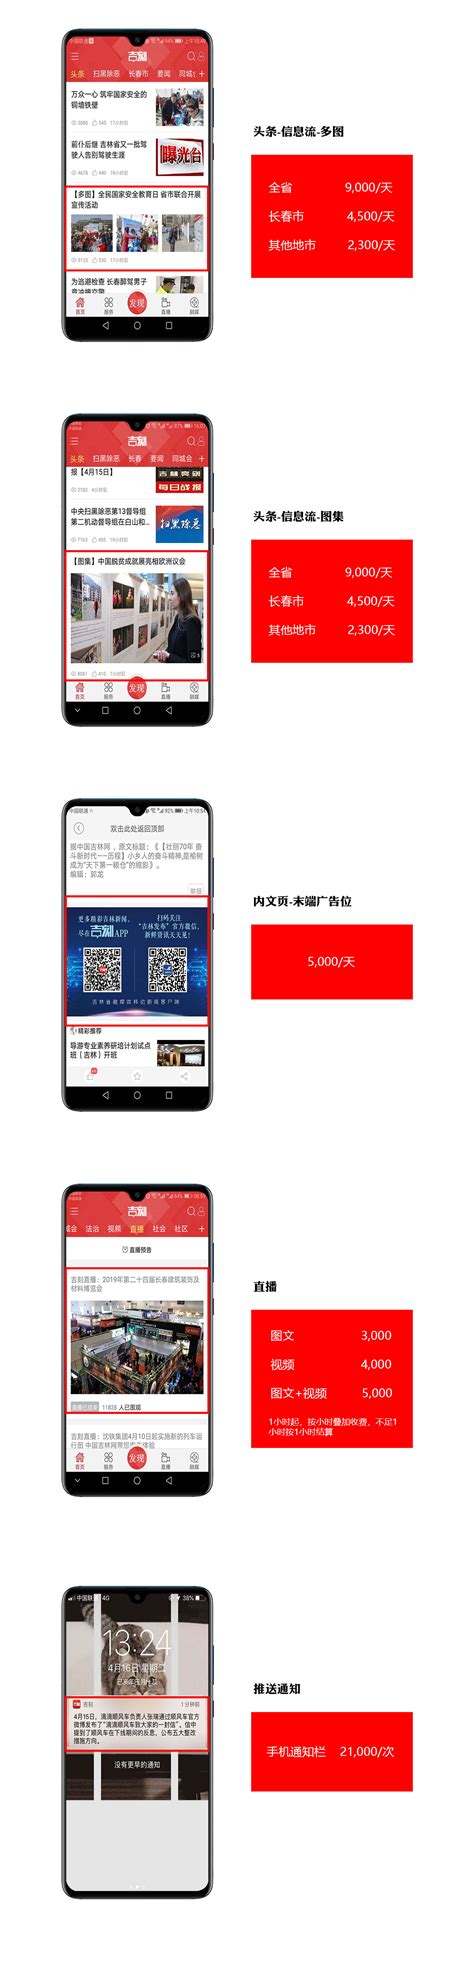 广告刊例-中国吉林网